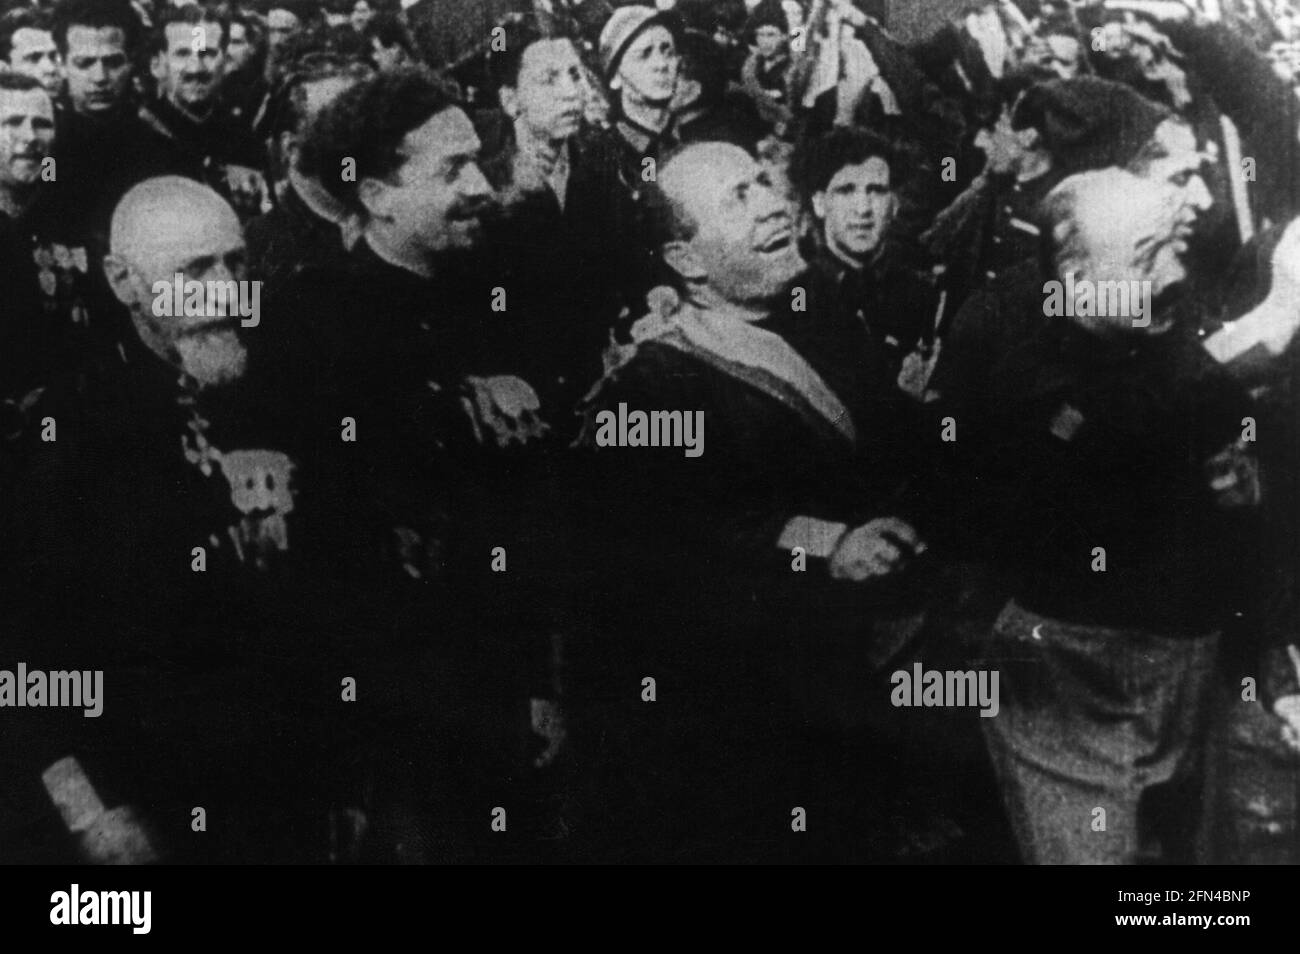 Mussolini, Benito, 29.7.1883 - 28.4.1945, politicien italien, Premier ministre 30.10.1922 - 25.7.1943, victoire des fascistes, USAGE ÉDITORIAL EXCLUSIF Banque D'Images